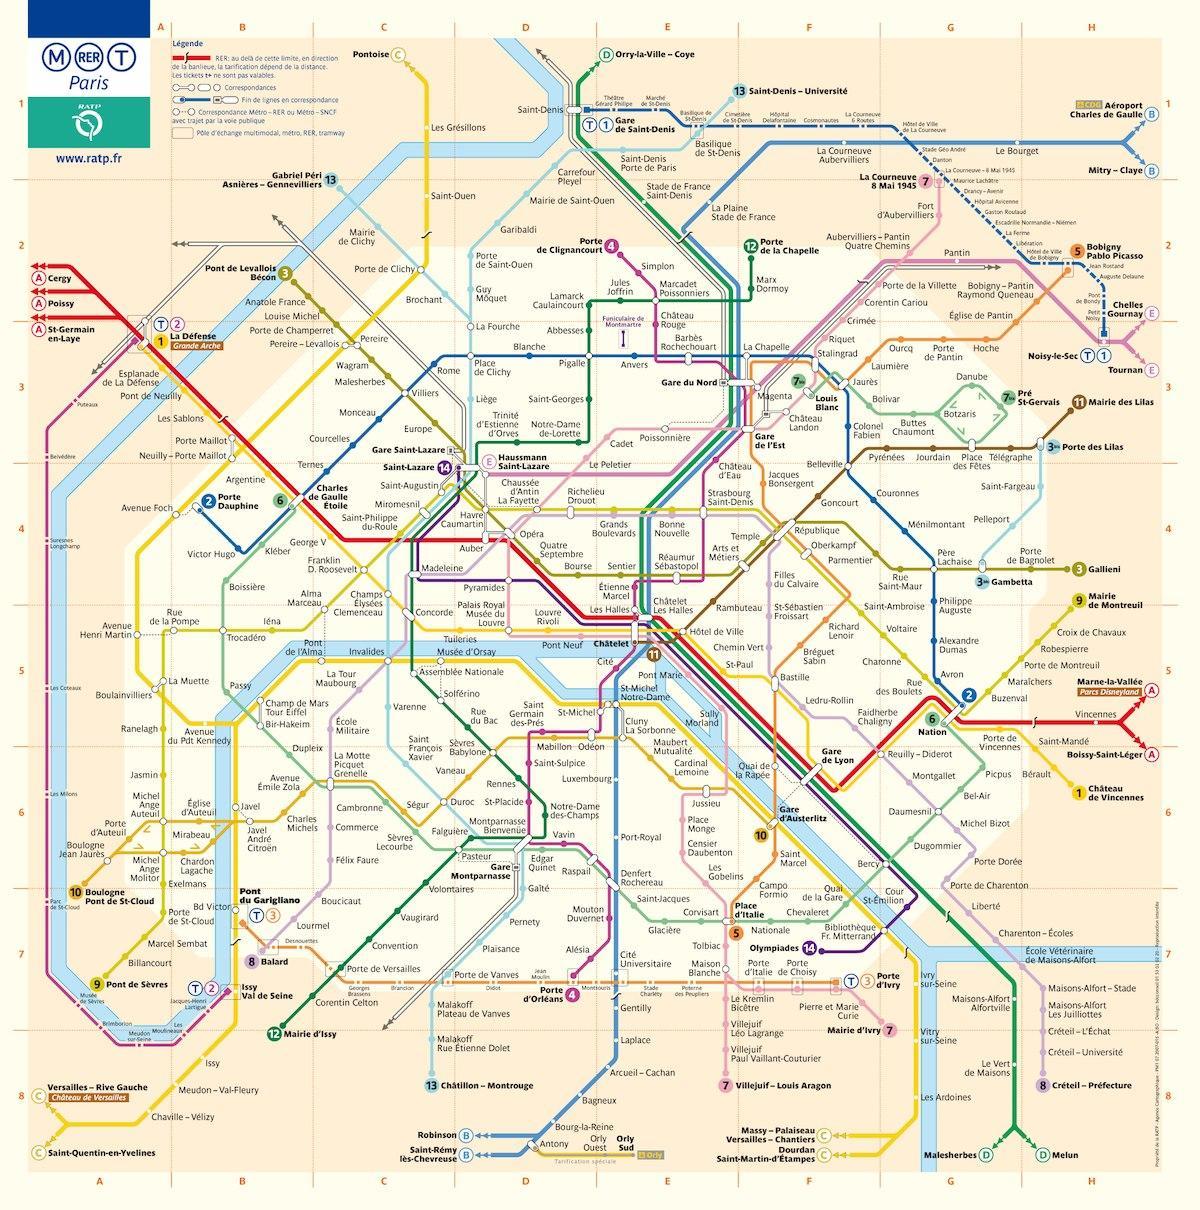 Вашингтон, окръг Колумбия карта на метрото с улици